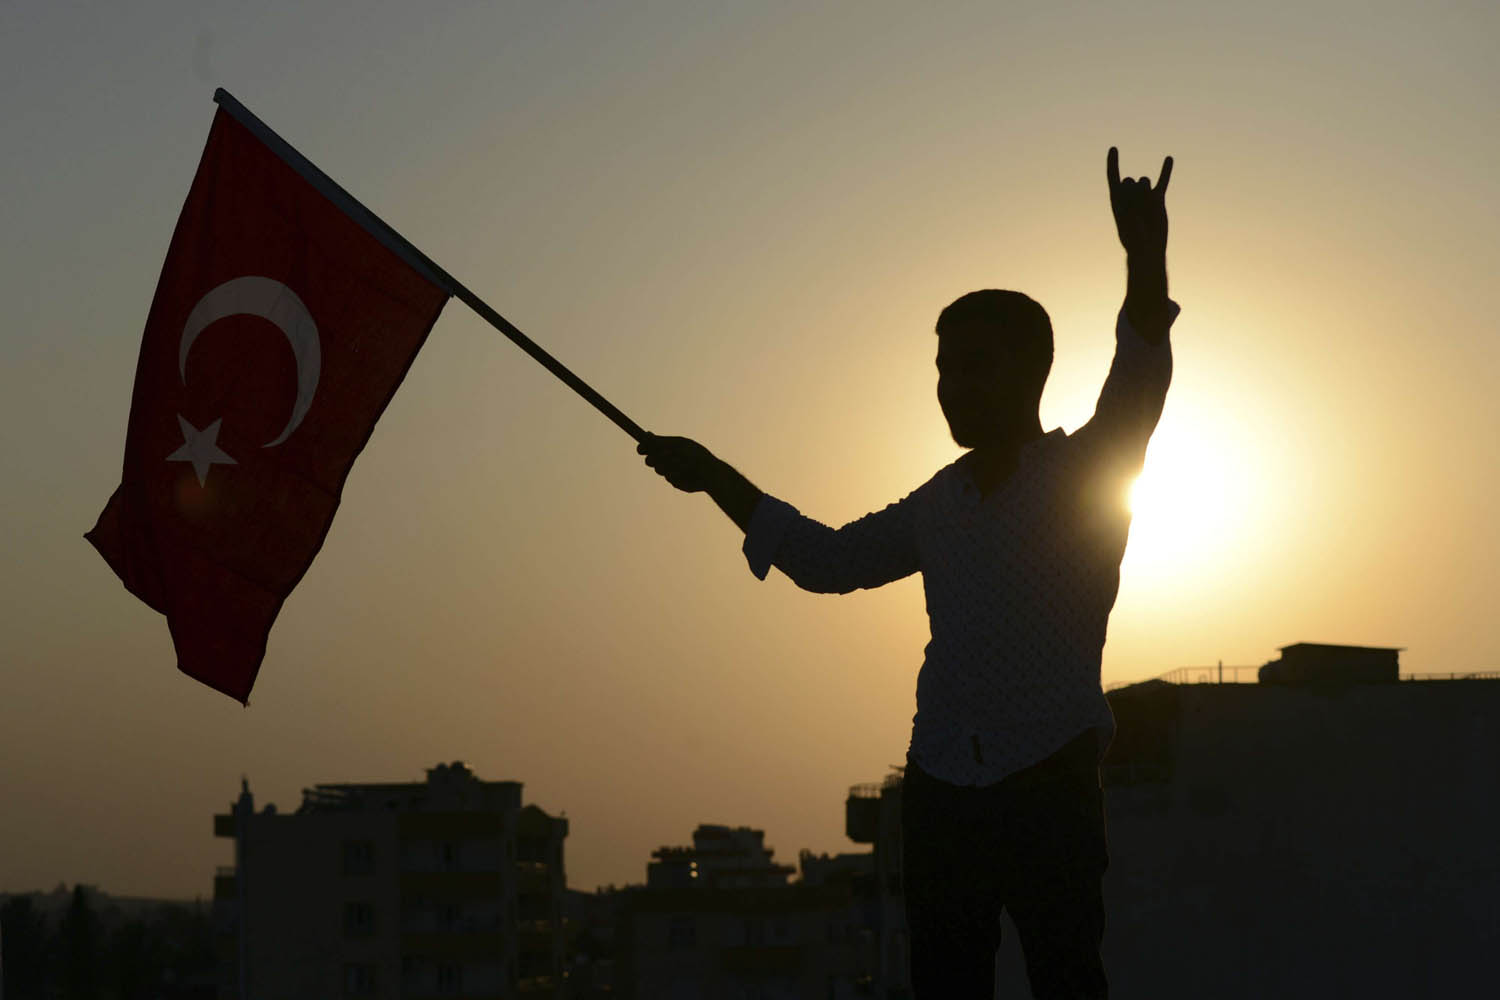 سوري موال للاتراك يرفع علما تركيا في تل أبيض